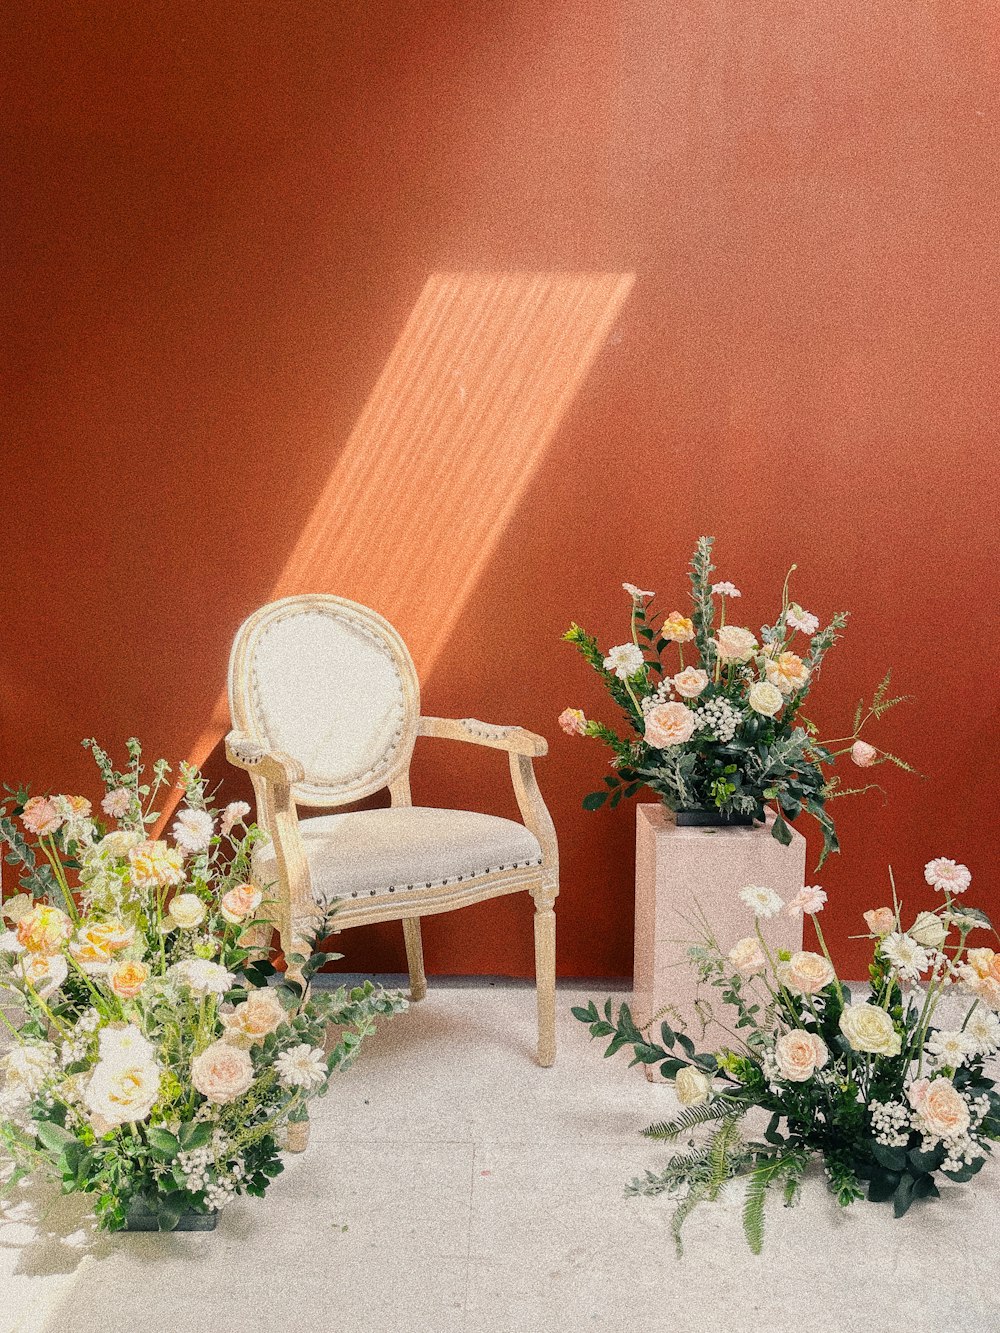 椅子と花束